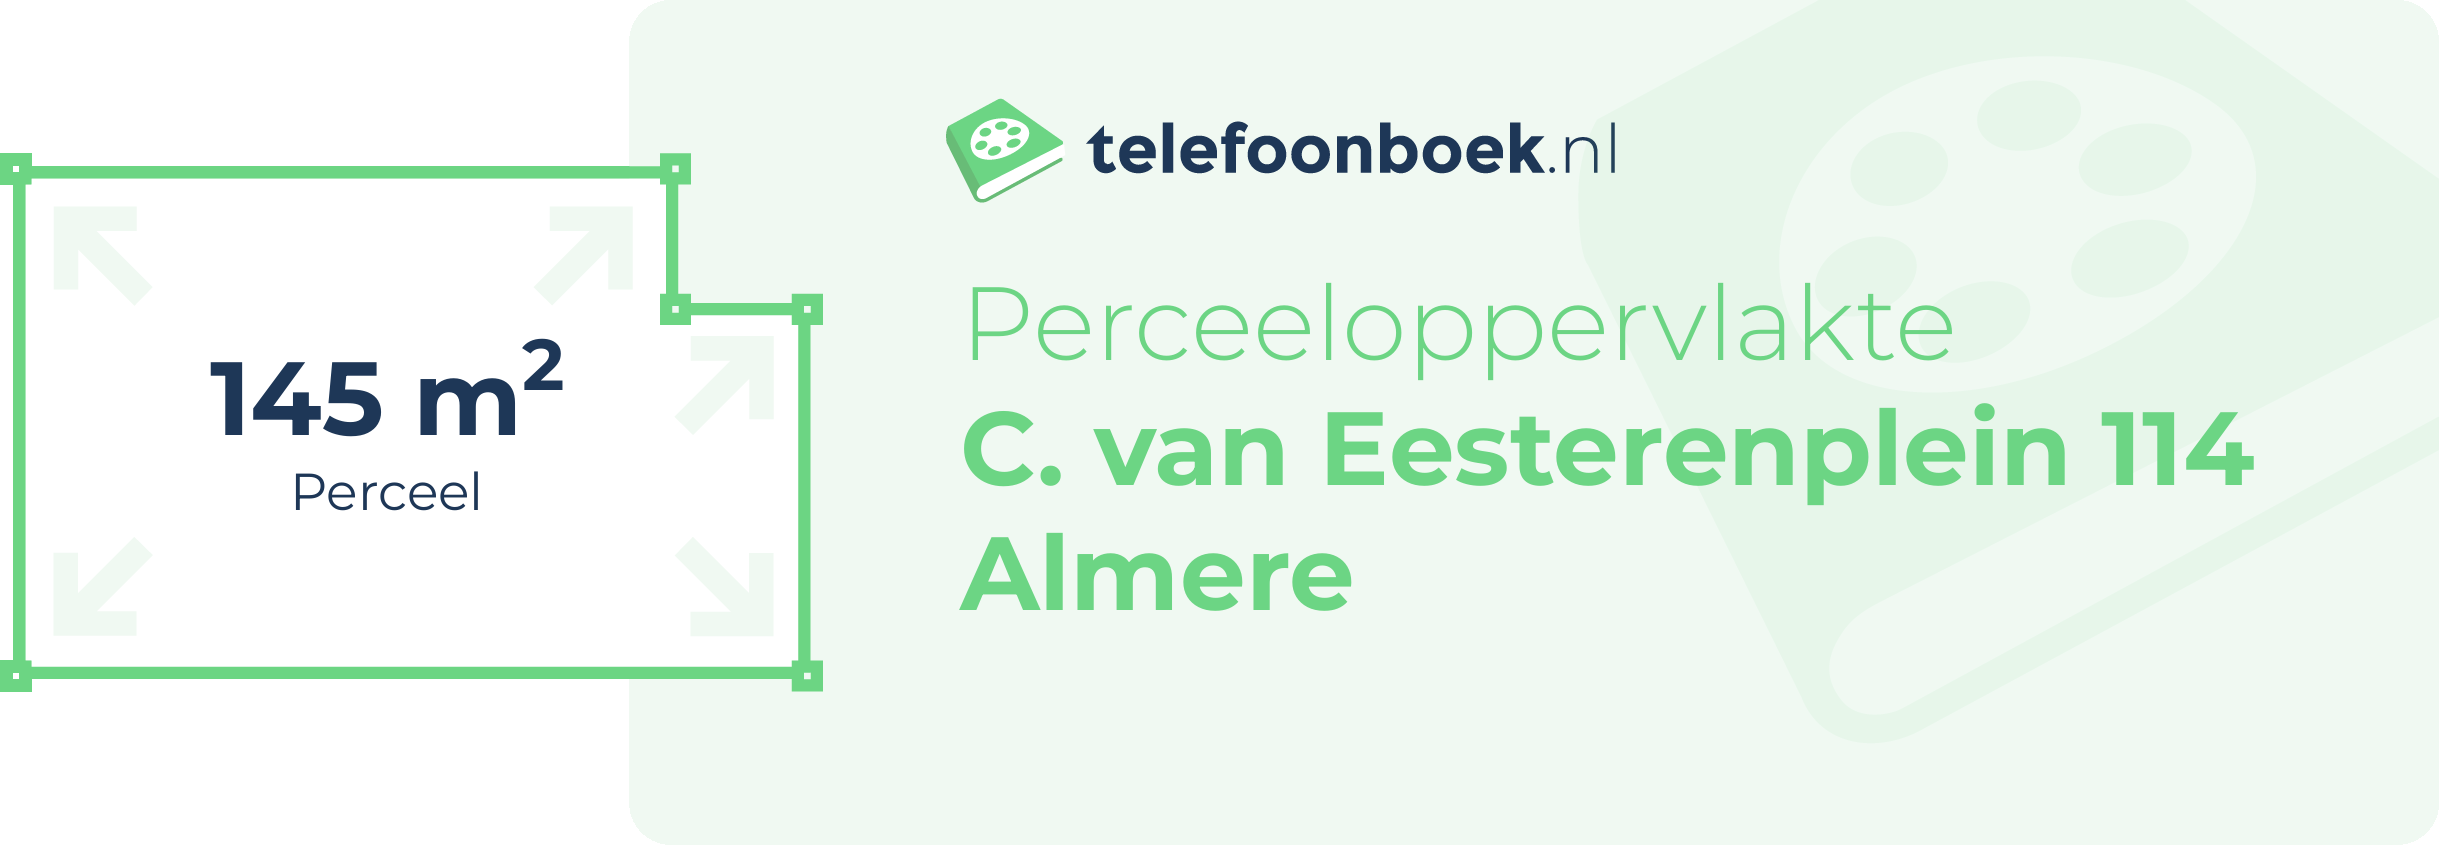 Perceeloppervlakte C. Van Eesterenplein 114 Almere